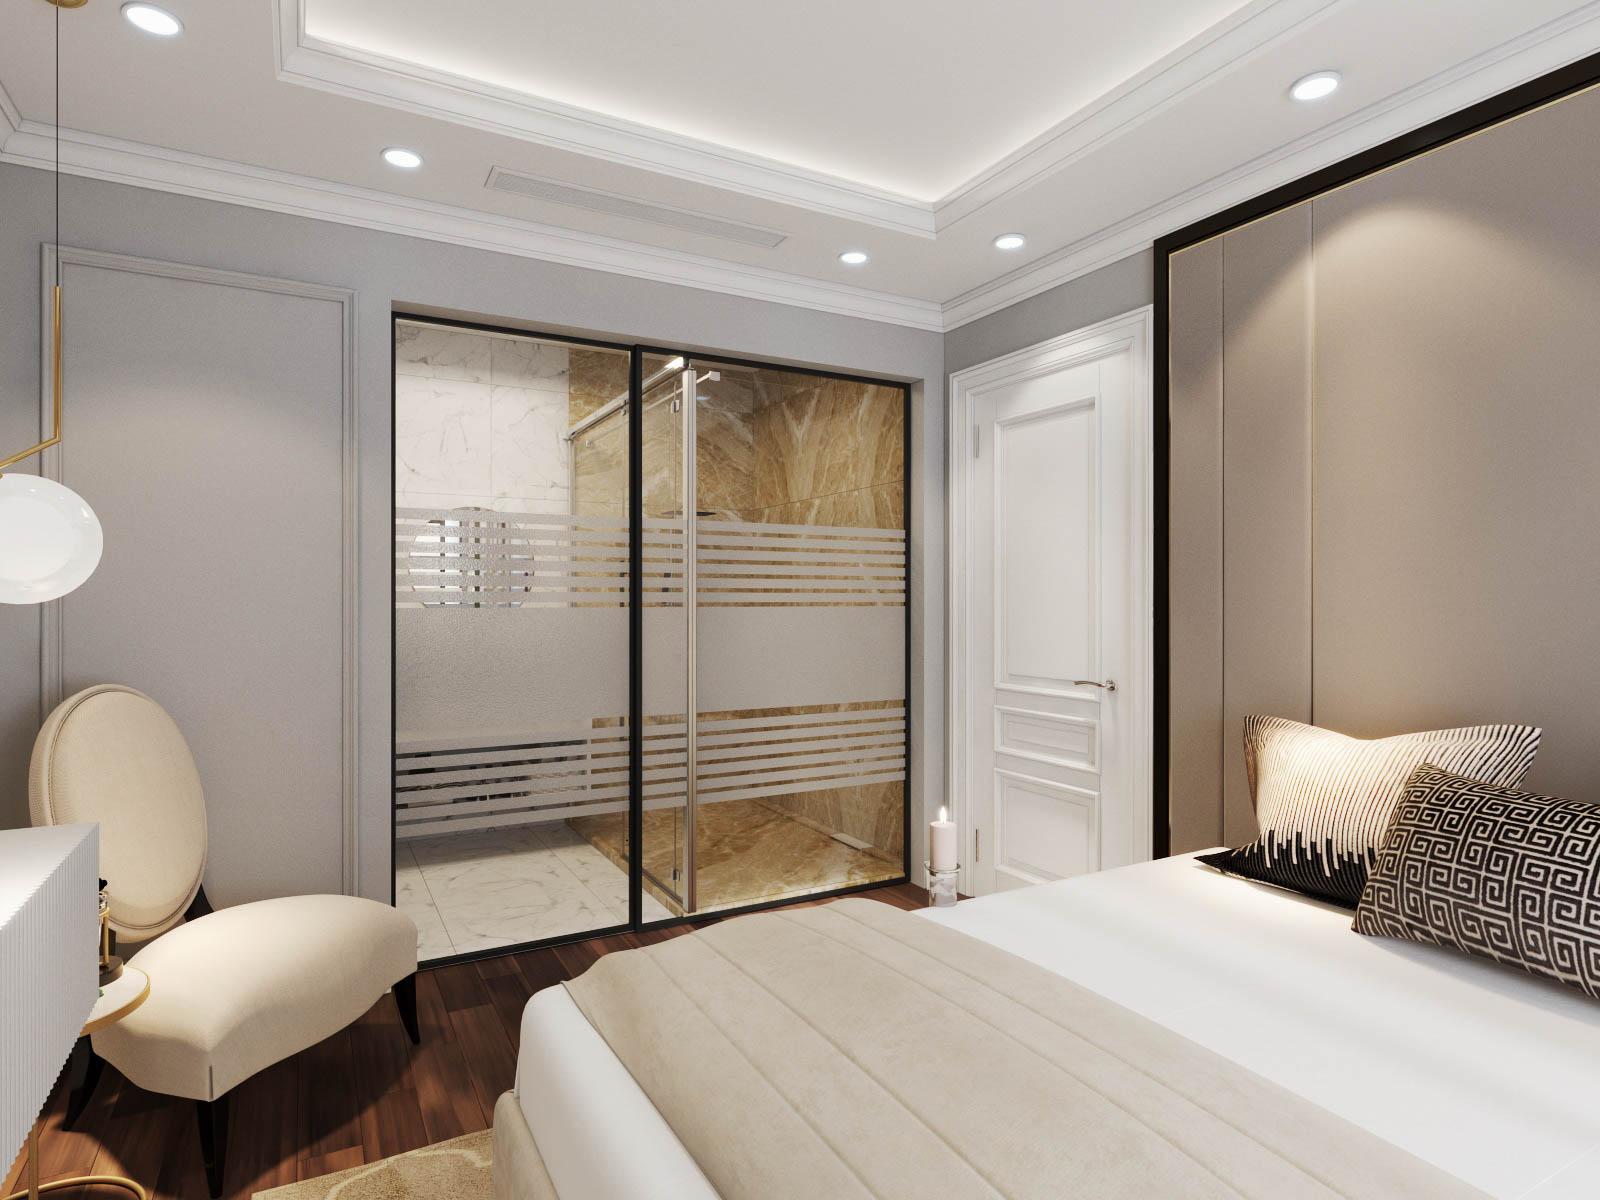 Phòng vệ sinh khép kín trong phòng ngủ master, được phân tách tinh tế bởi hệ cửa kính trong suốt, cao rộng giúp căn phòng trông thoáng rộng hơn.